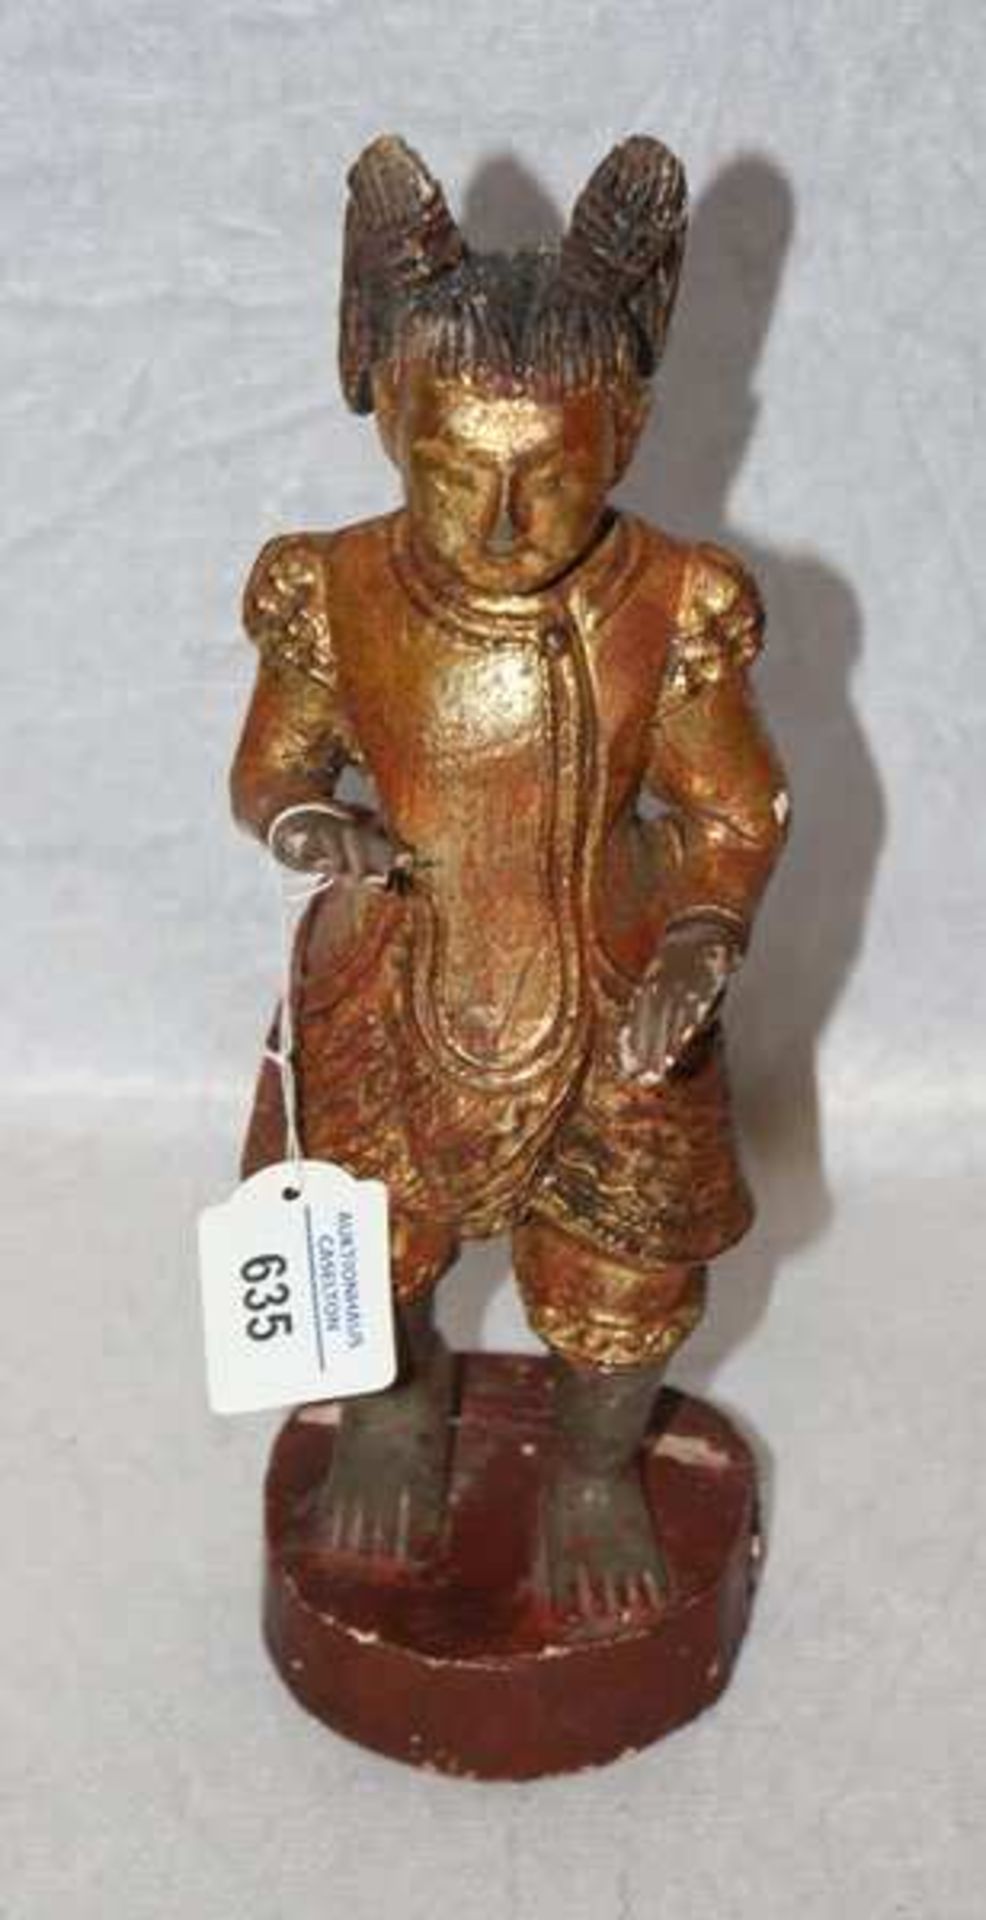 Asiatische Figurenskulptur auf rundem Sockel stehend, gefaßt, H 28 cm, Altersspuren, teils